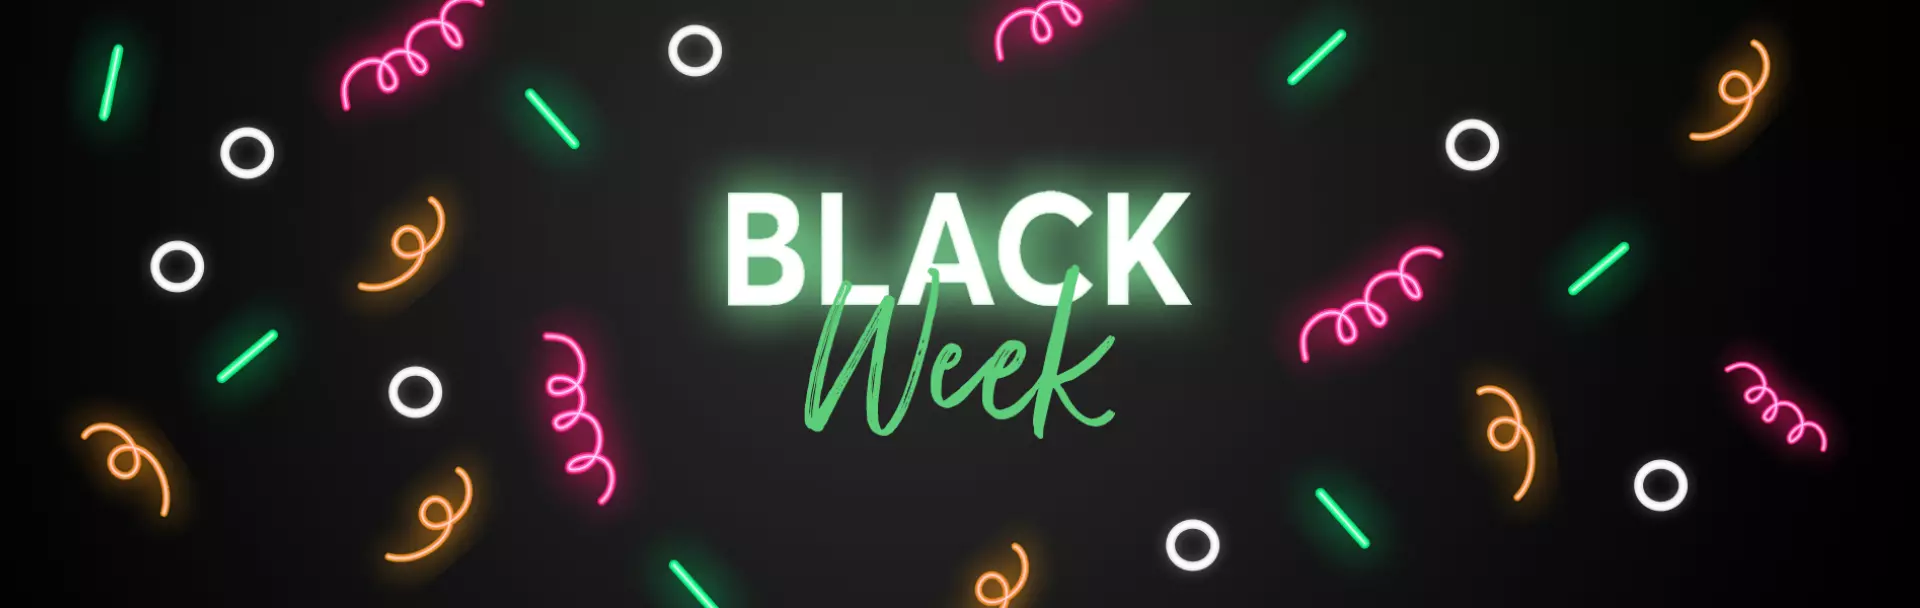 Feierstimmung in Neonpartybeleuchtung um ein zentral gelegenes Neon Schild mit der Aufschrift: "Black Week" verspricht grandiose Rabatte auf die beliebten XXL Adventskalender und Boxen